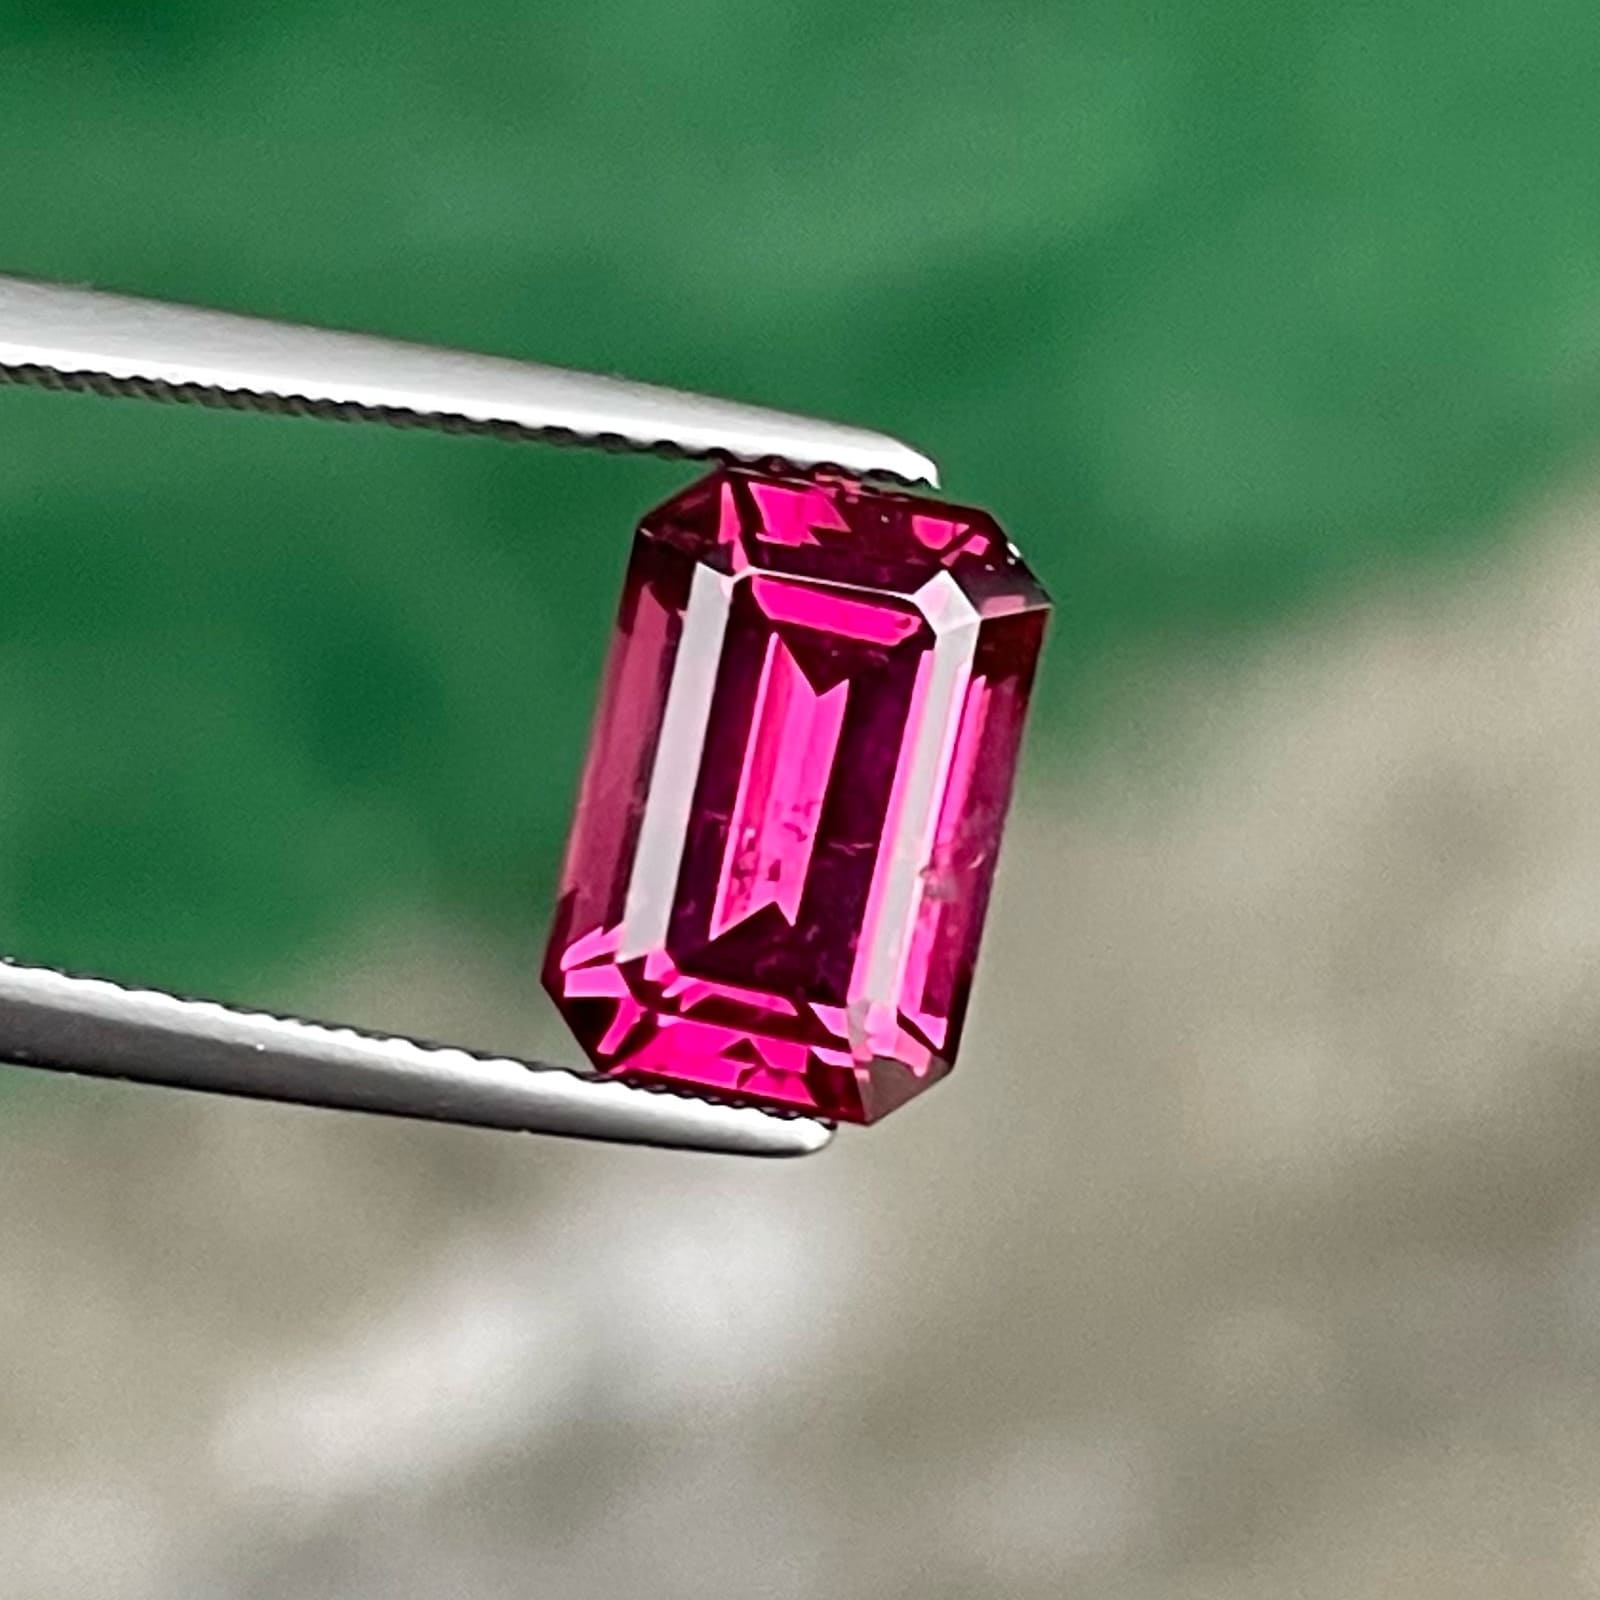 Deep Pink Malawi Garnet Stone For Ring